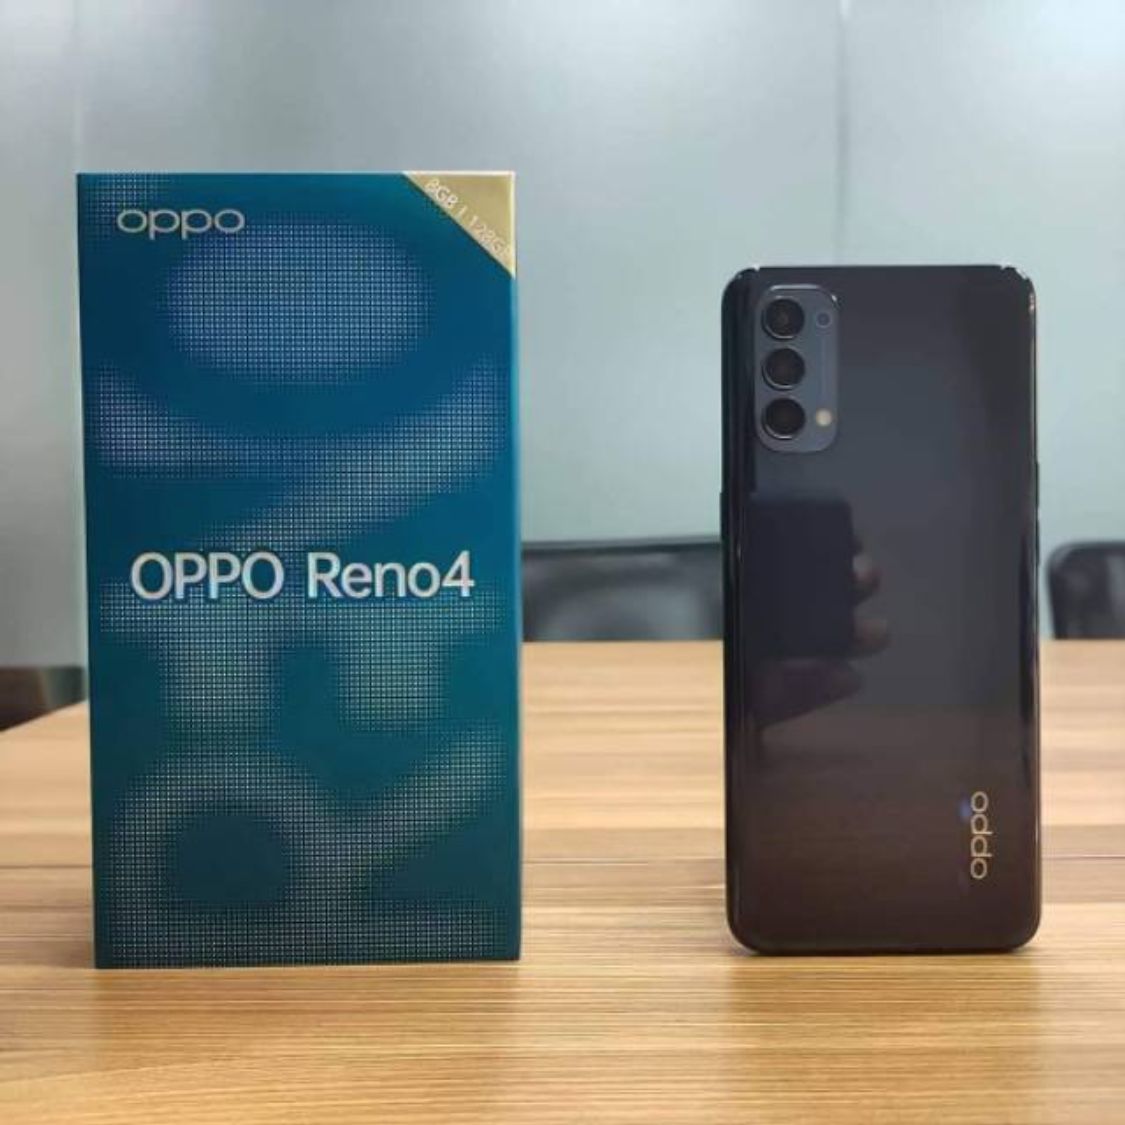 Daftar Harga HP OPPO 24 September 2020: Oppo Reno 4, Find X2 Pro, Oppo